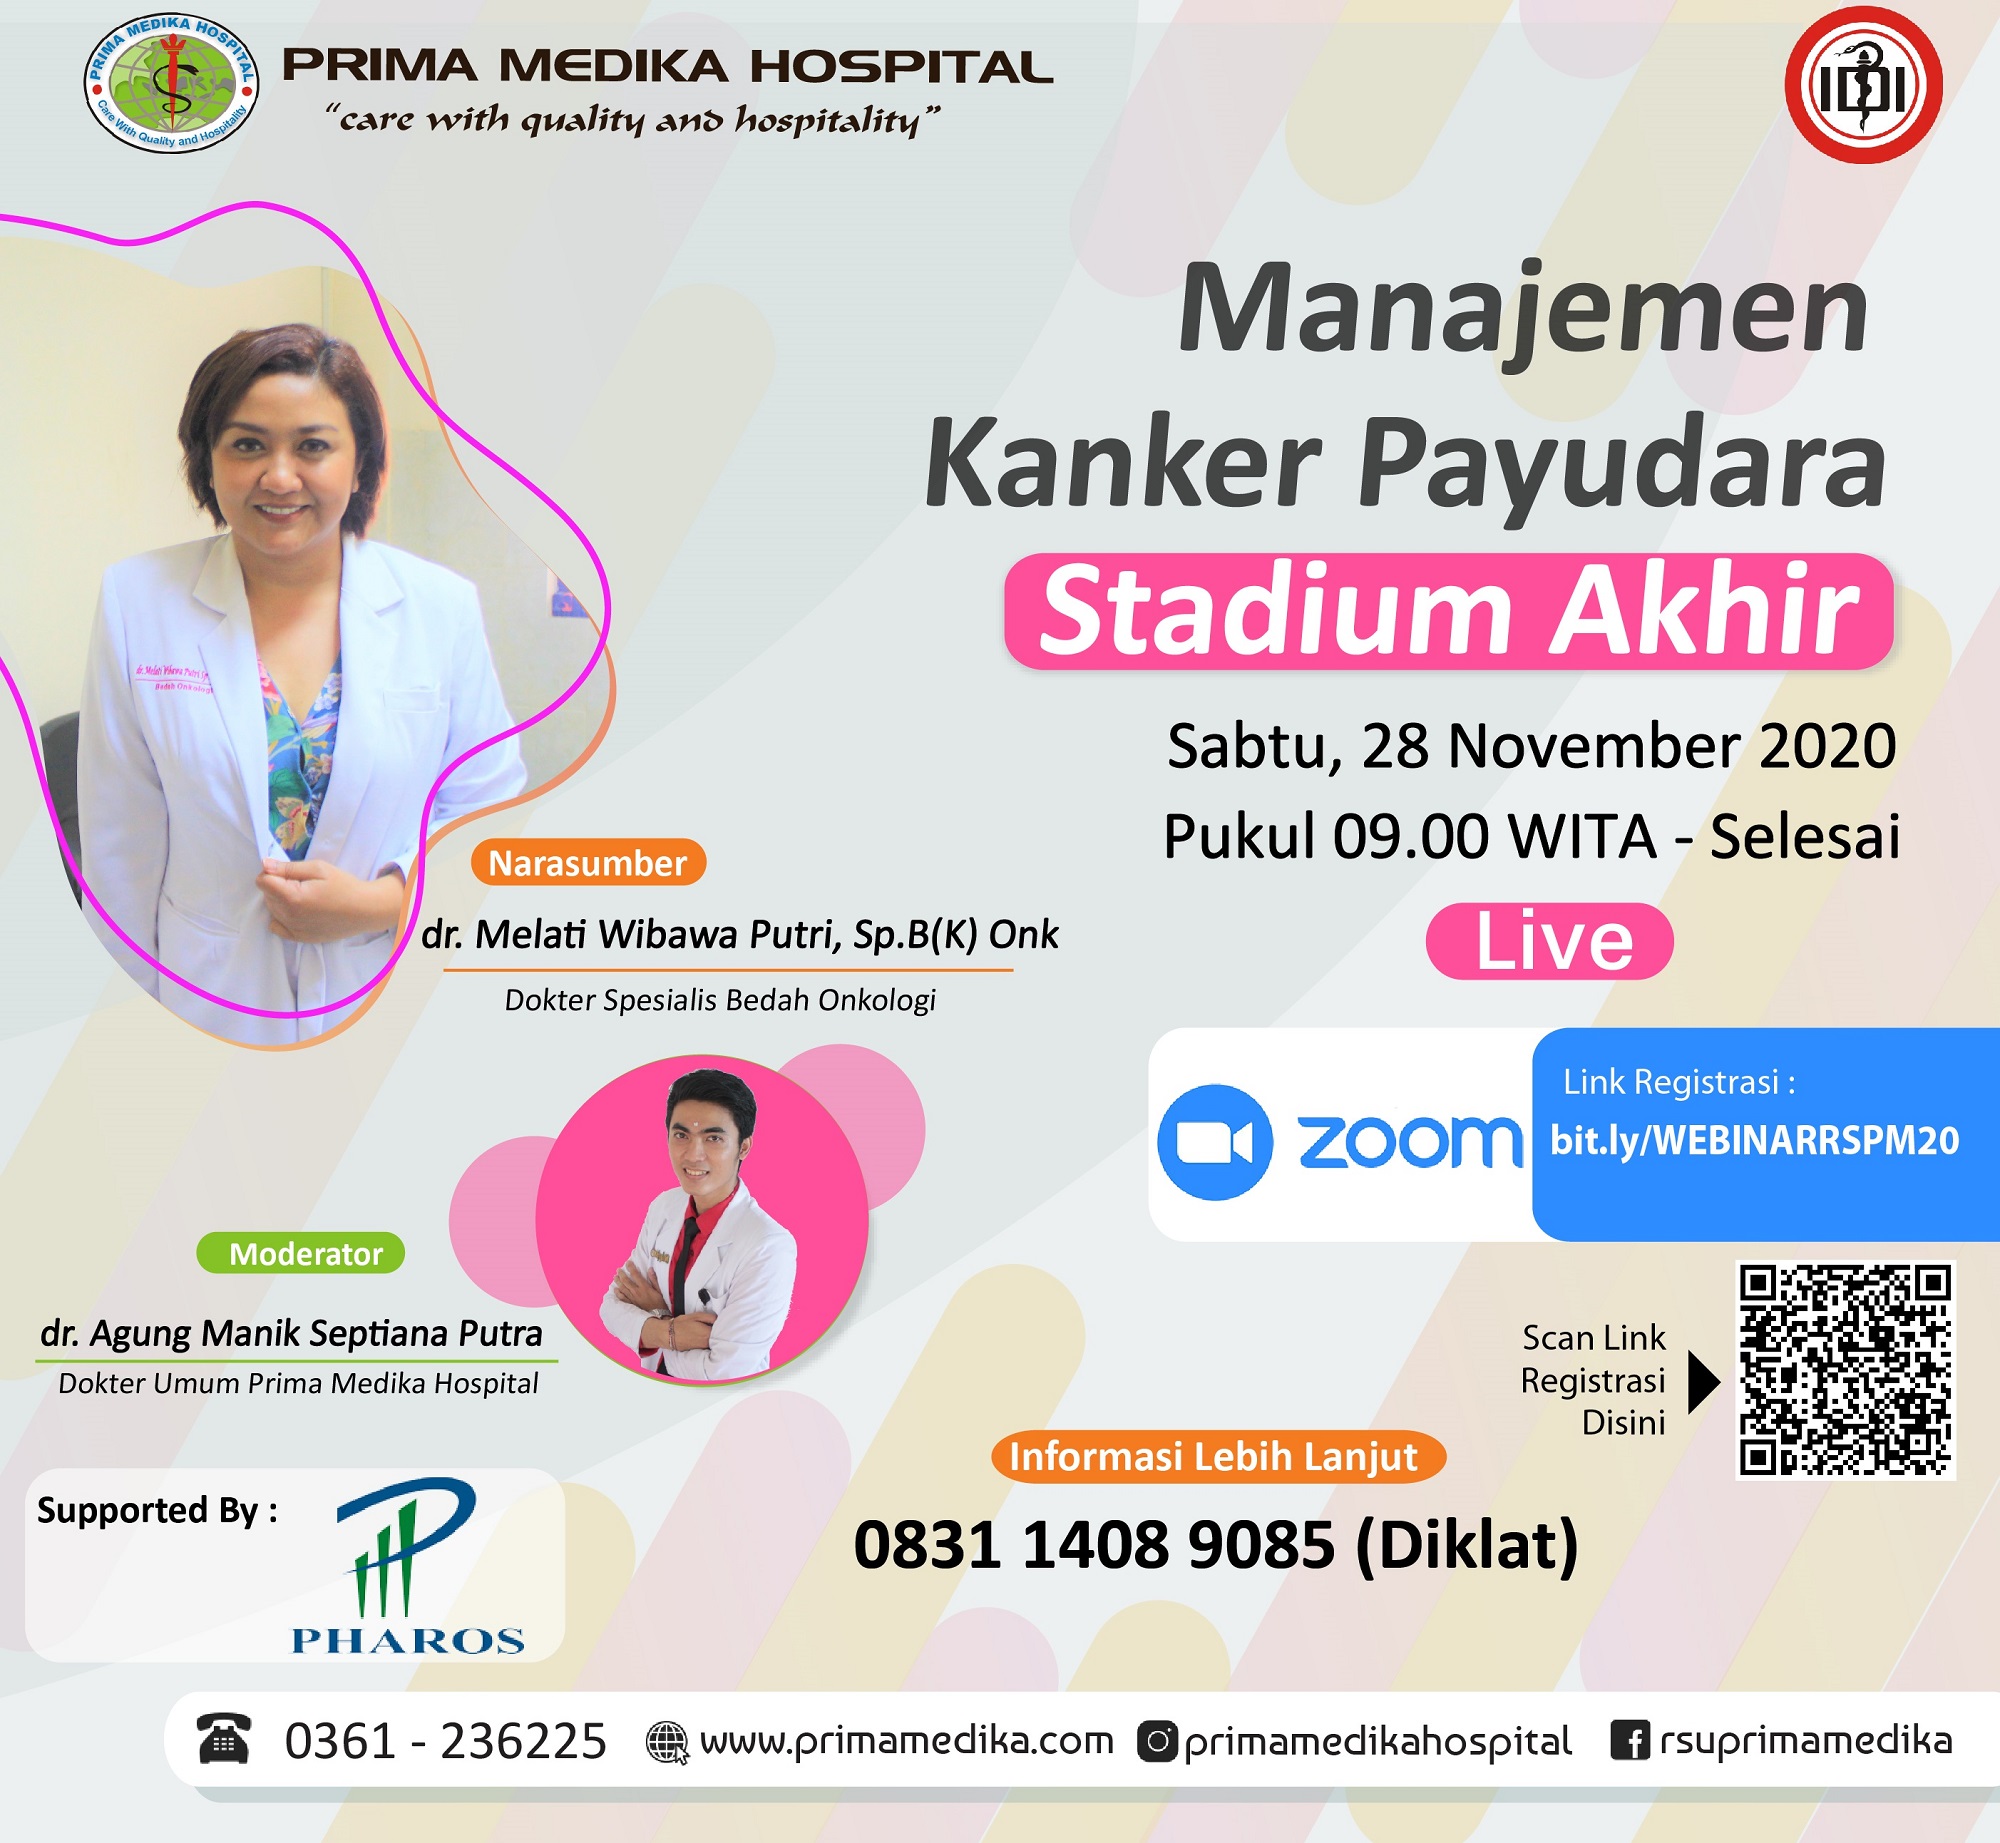 live webinar "Manajemen Kanker Payudara Stadium Akhir"